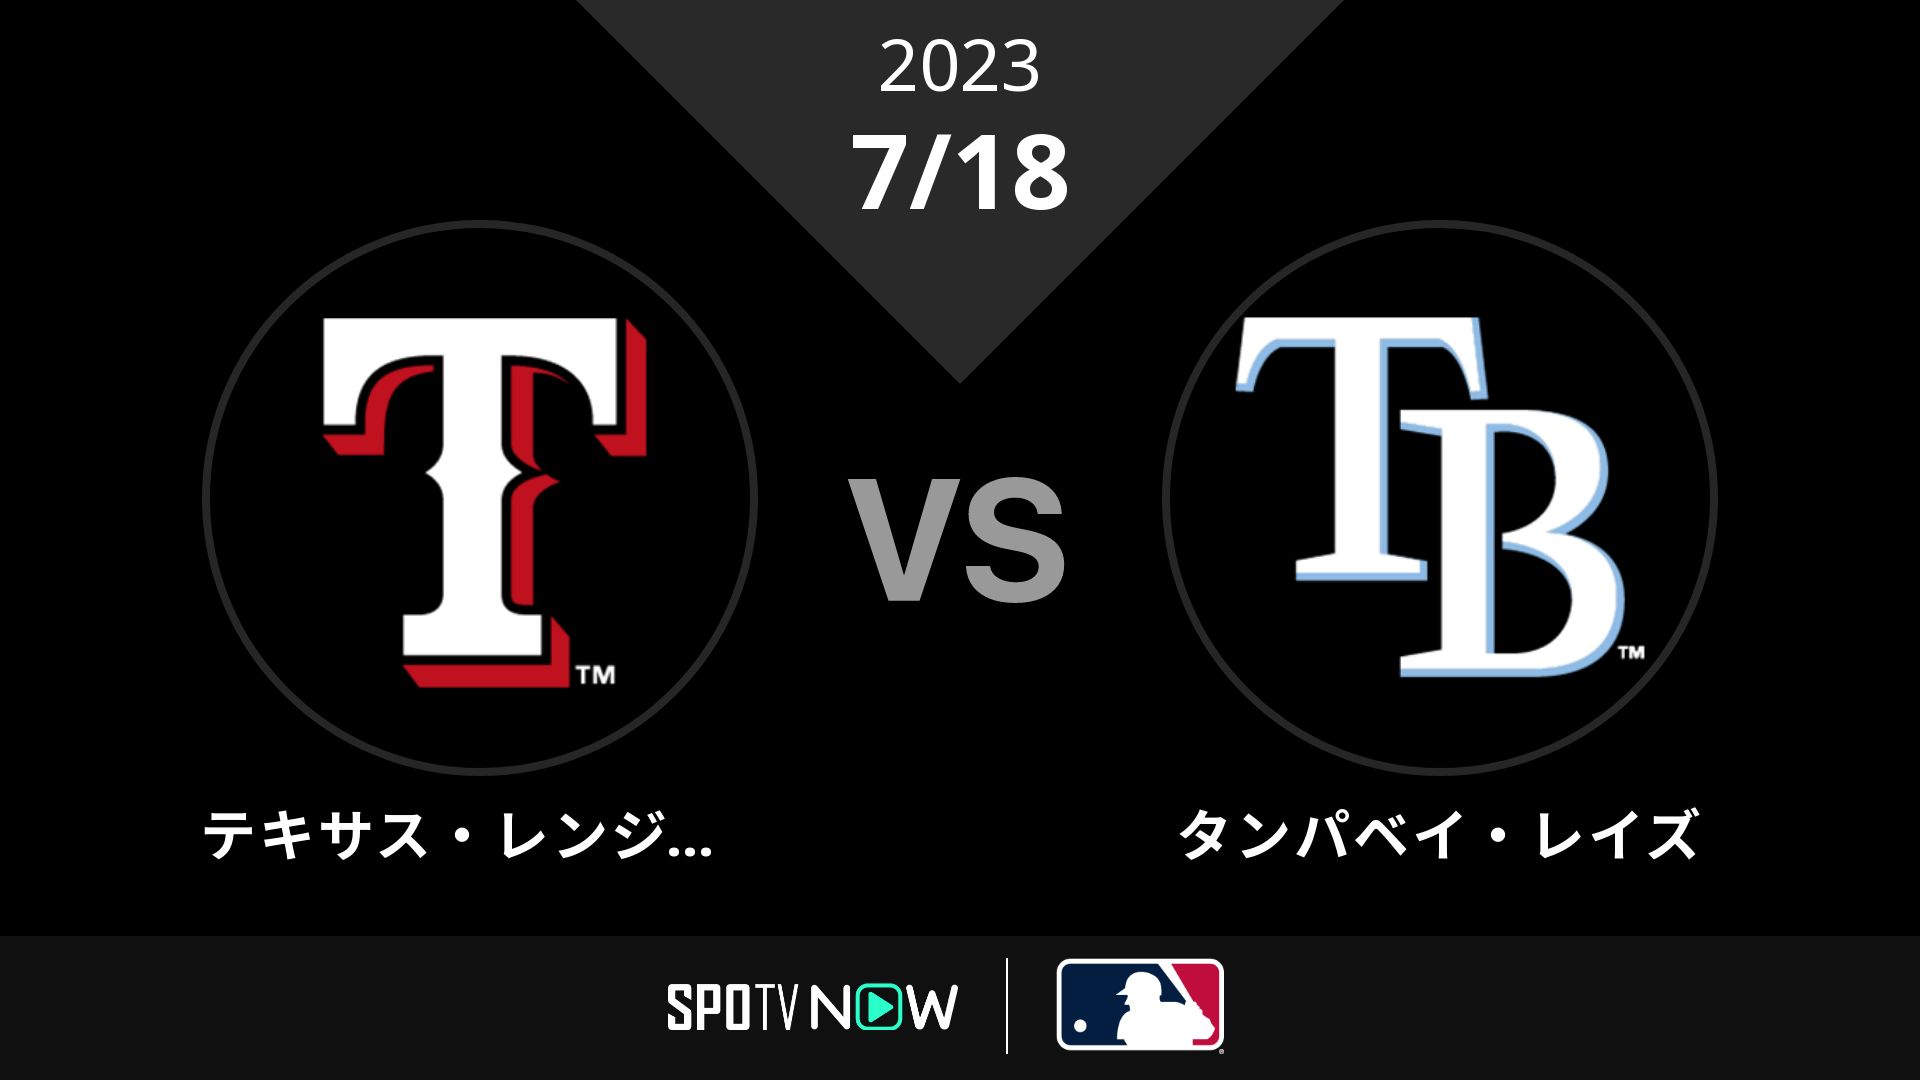 2023/7/18 レンジャーズ vs レイズ [MLB]